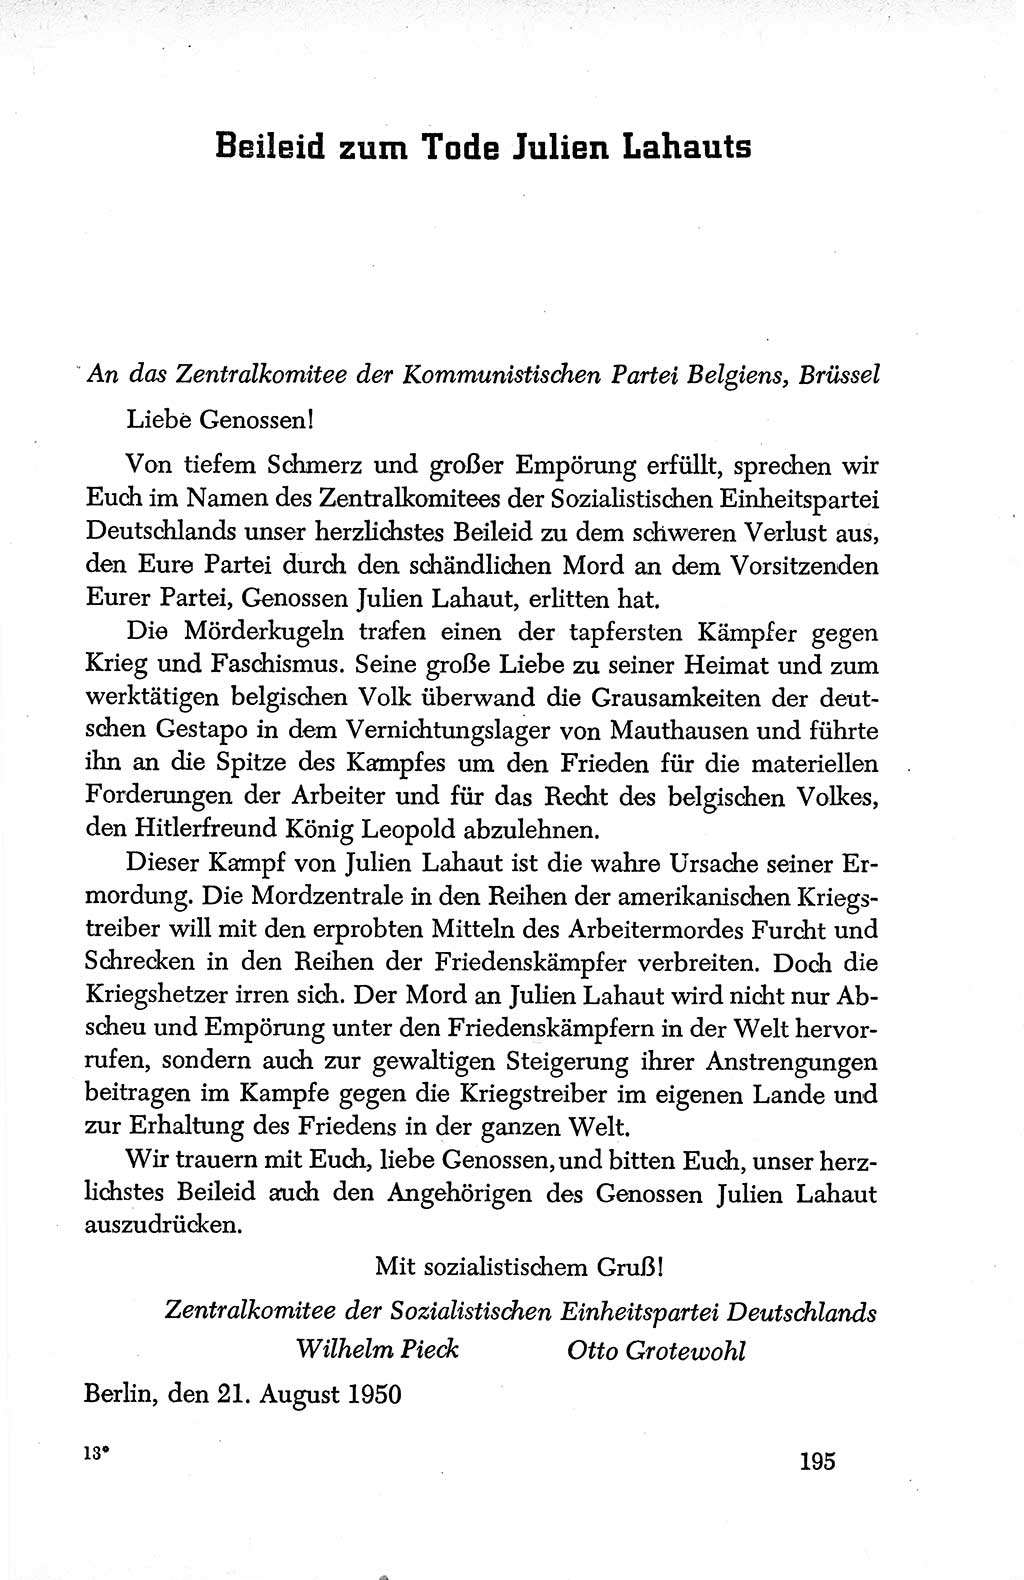 Dokumente der Sozialistischen Einheitspartei Deutschlands (SED) [Deutsche Demokratische Republik (DDR)] 1950-1952, Seite 195 (Dok. SED DDR 1950-1952, S. 195)